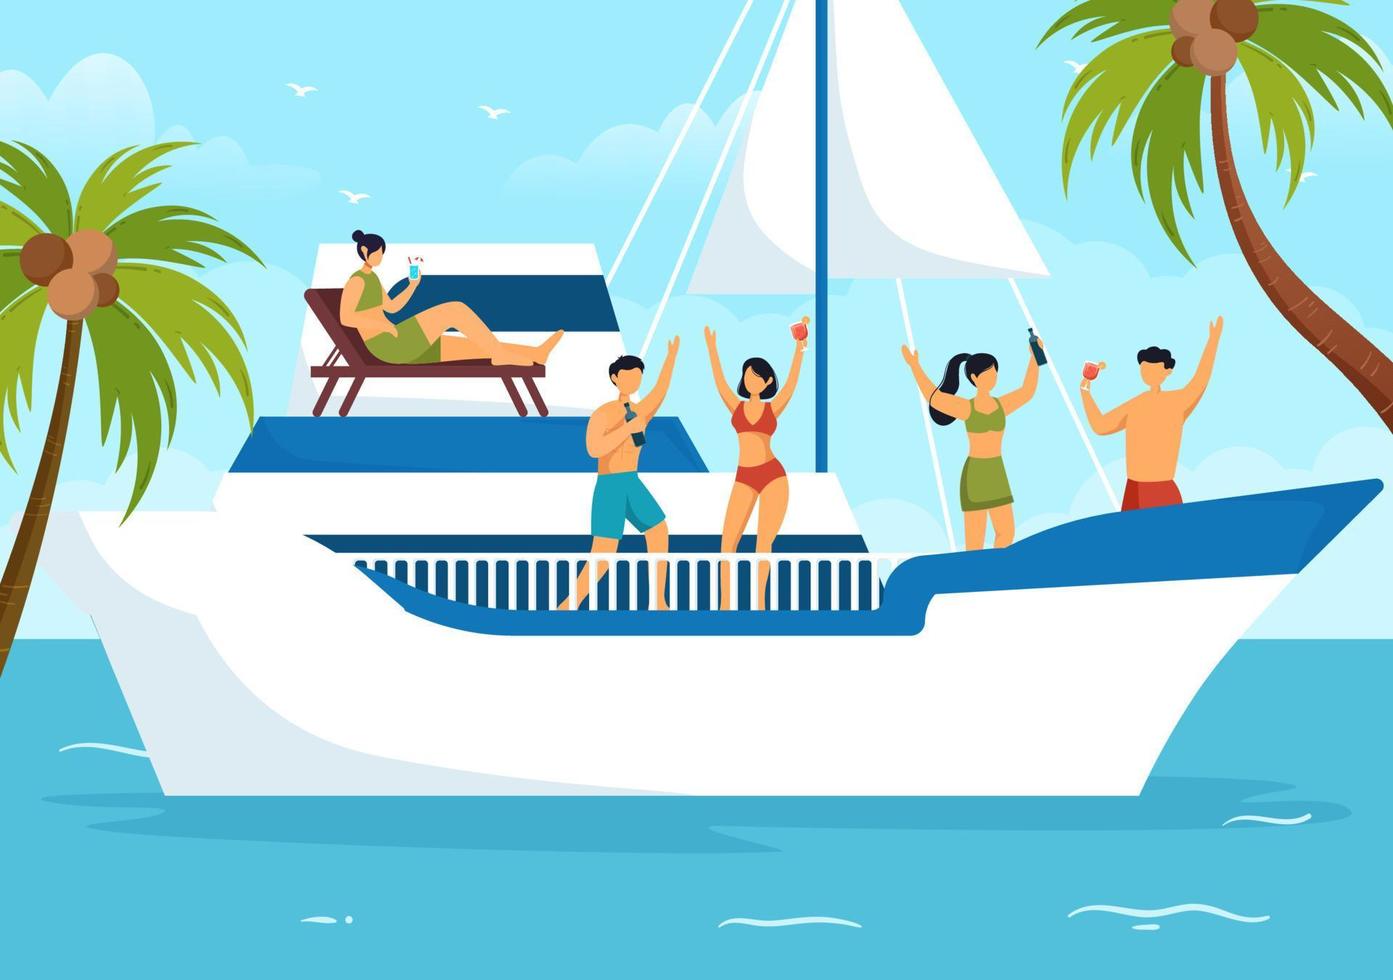 modelo de iates ilustração plana de desenhos animados desenhados à mão com pessoas dançando, tomando sol, bebendo coquetéis e relaxando no iate de cruzeiro no oceano vetor